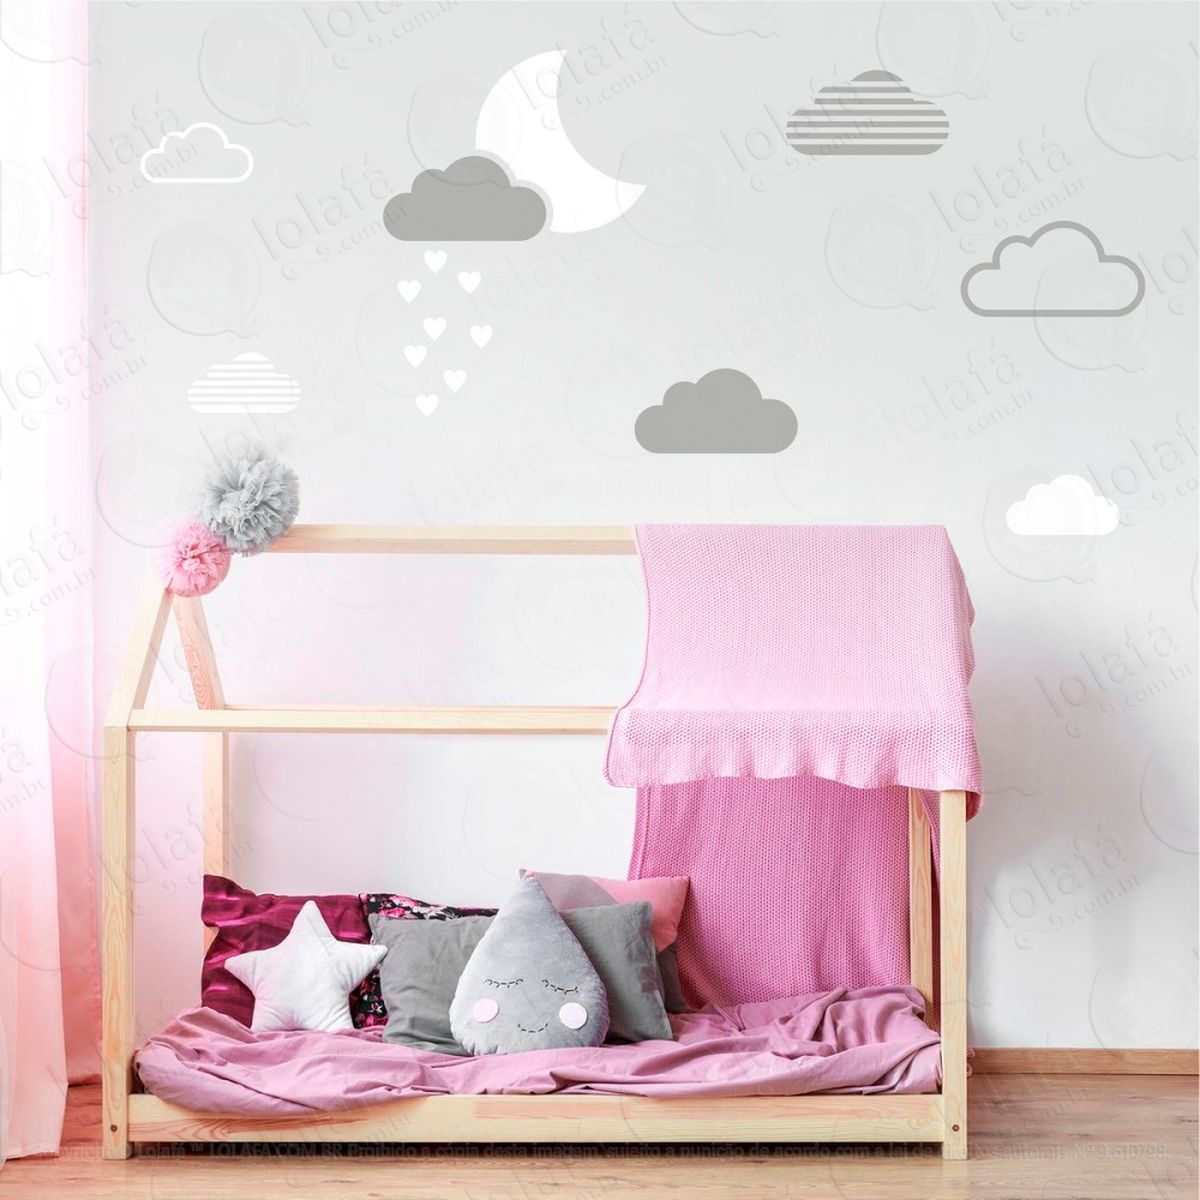 adesivos lua e nuvens 15 peças adesivos para quarto de bebê infantil - mod:884